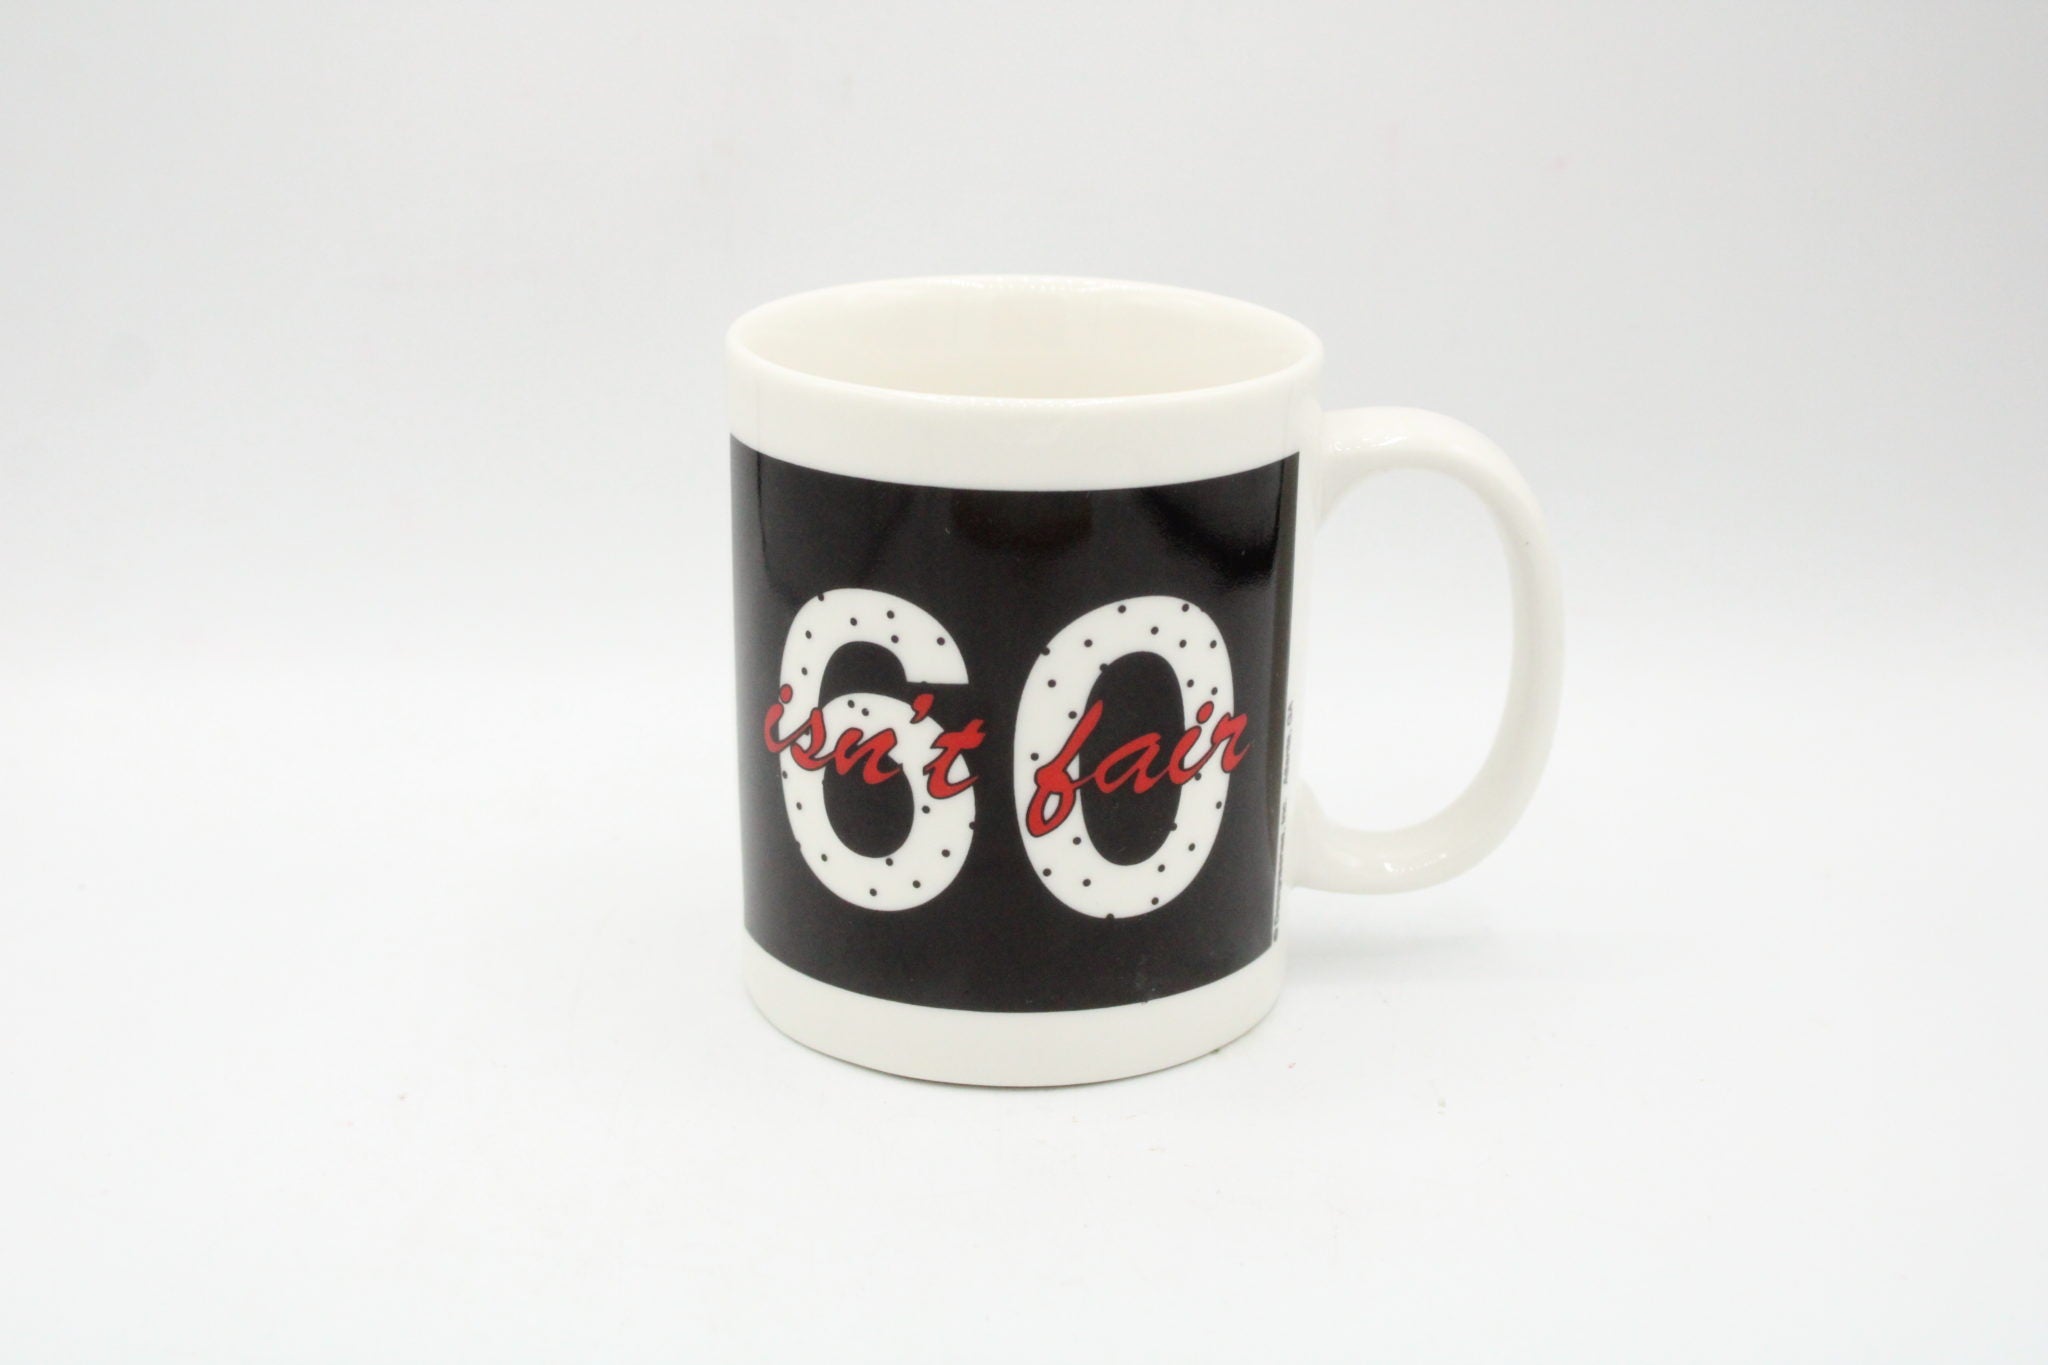 "60 Isn't Fair" Mug